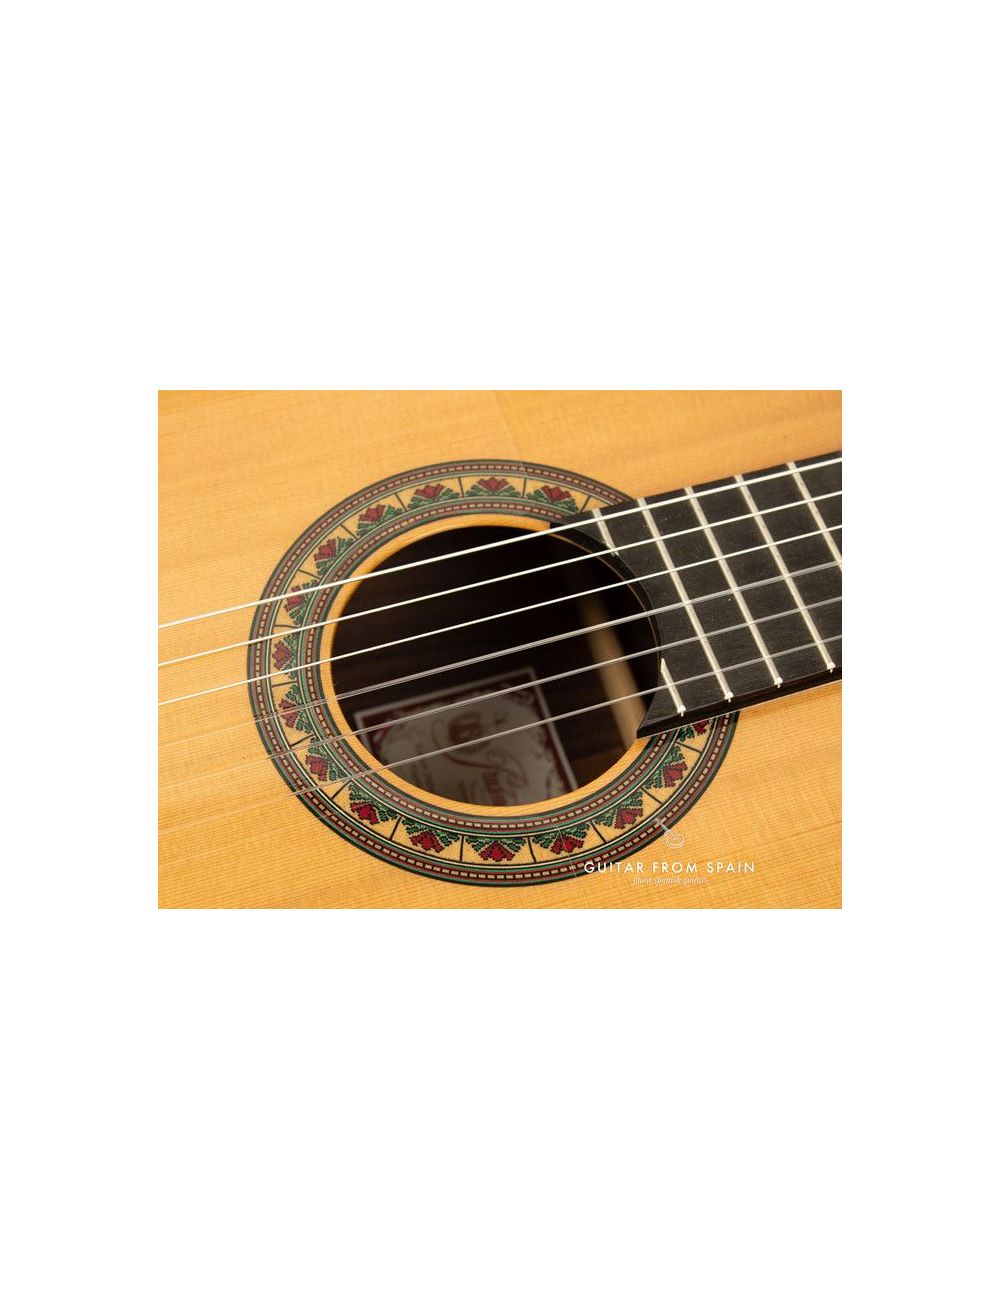 Prudencio Saez 2-FP (24) Flamenco Guitar 2-FP Flamenca Negra